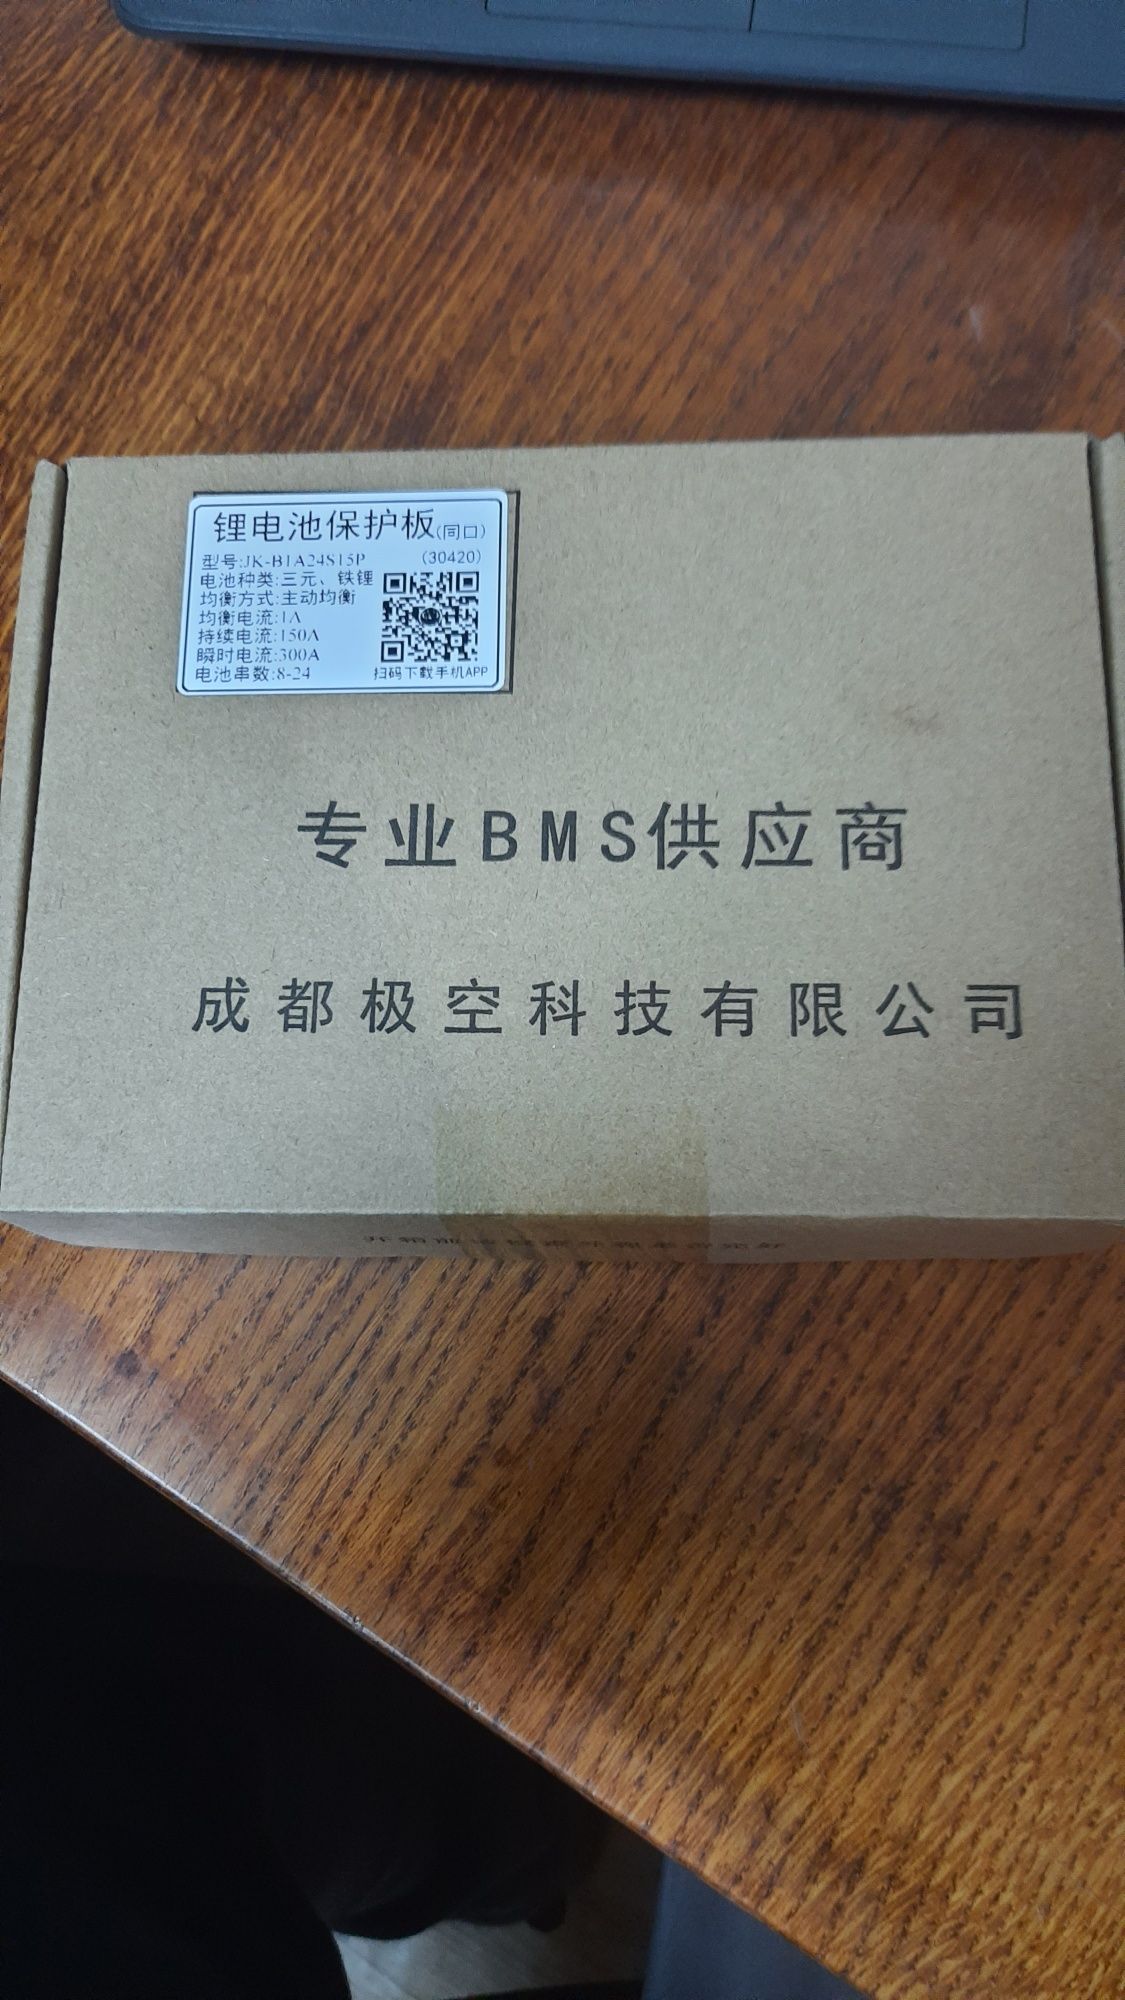 BMS JK-B1A20S15P
JK-B1A20S15P (от 8s дминальны